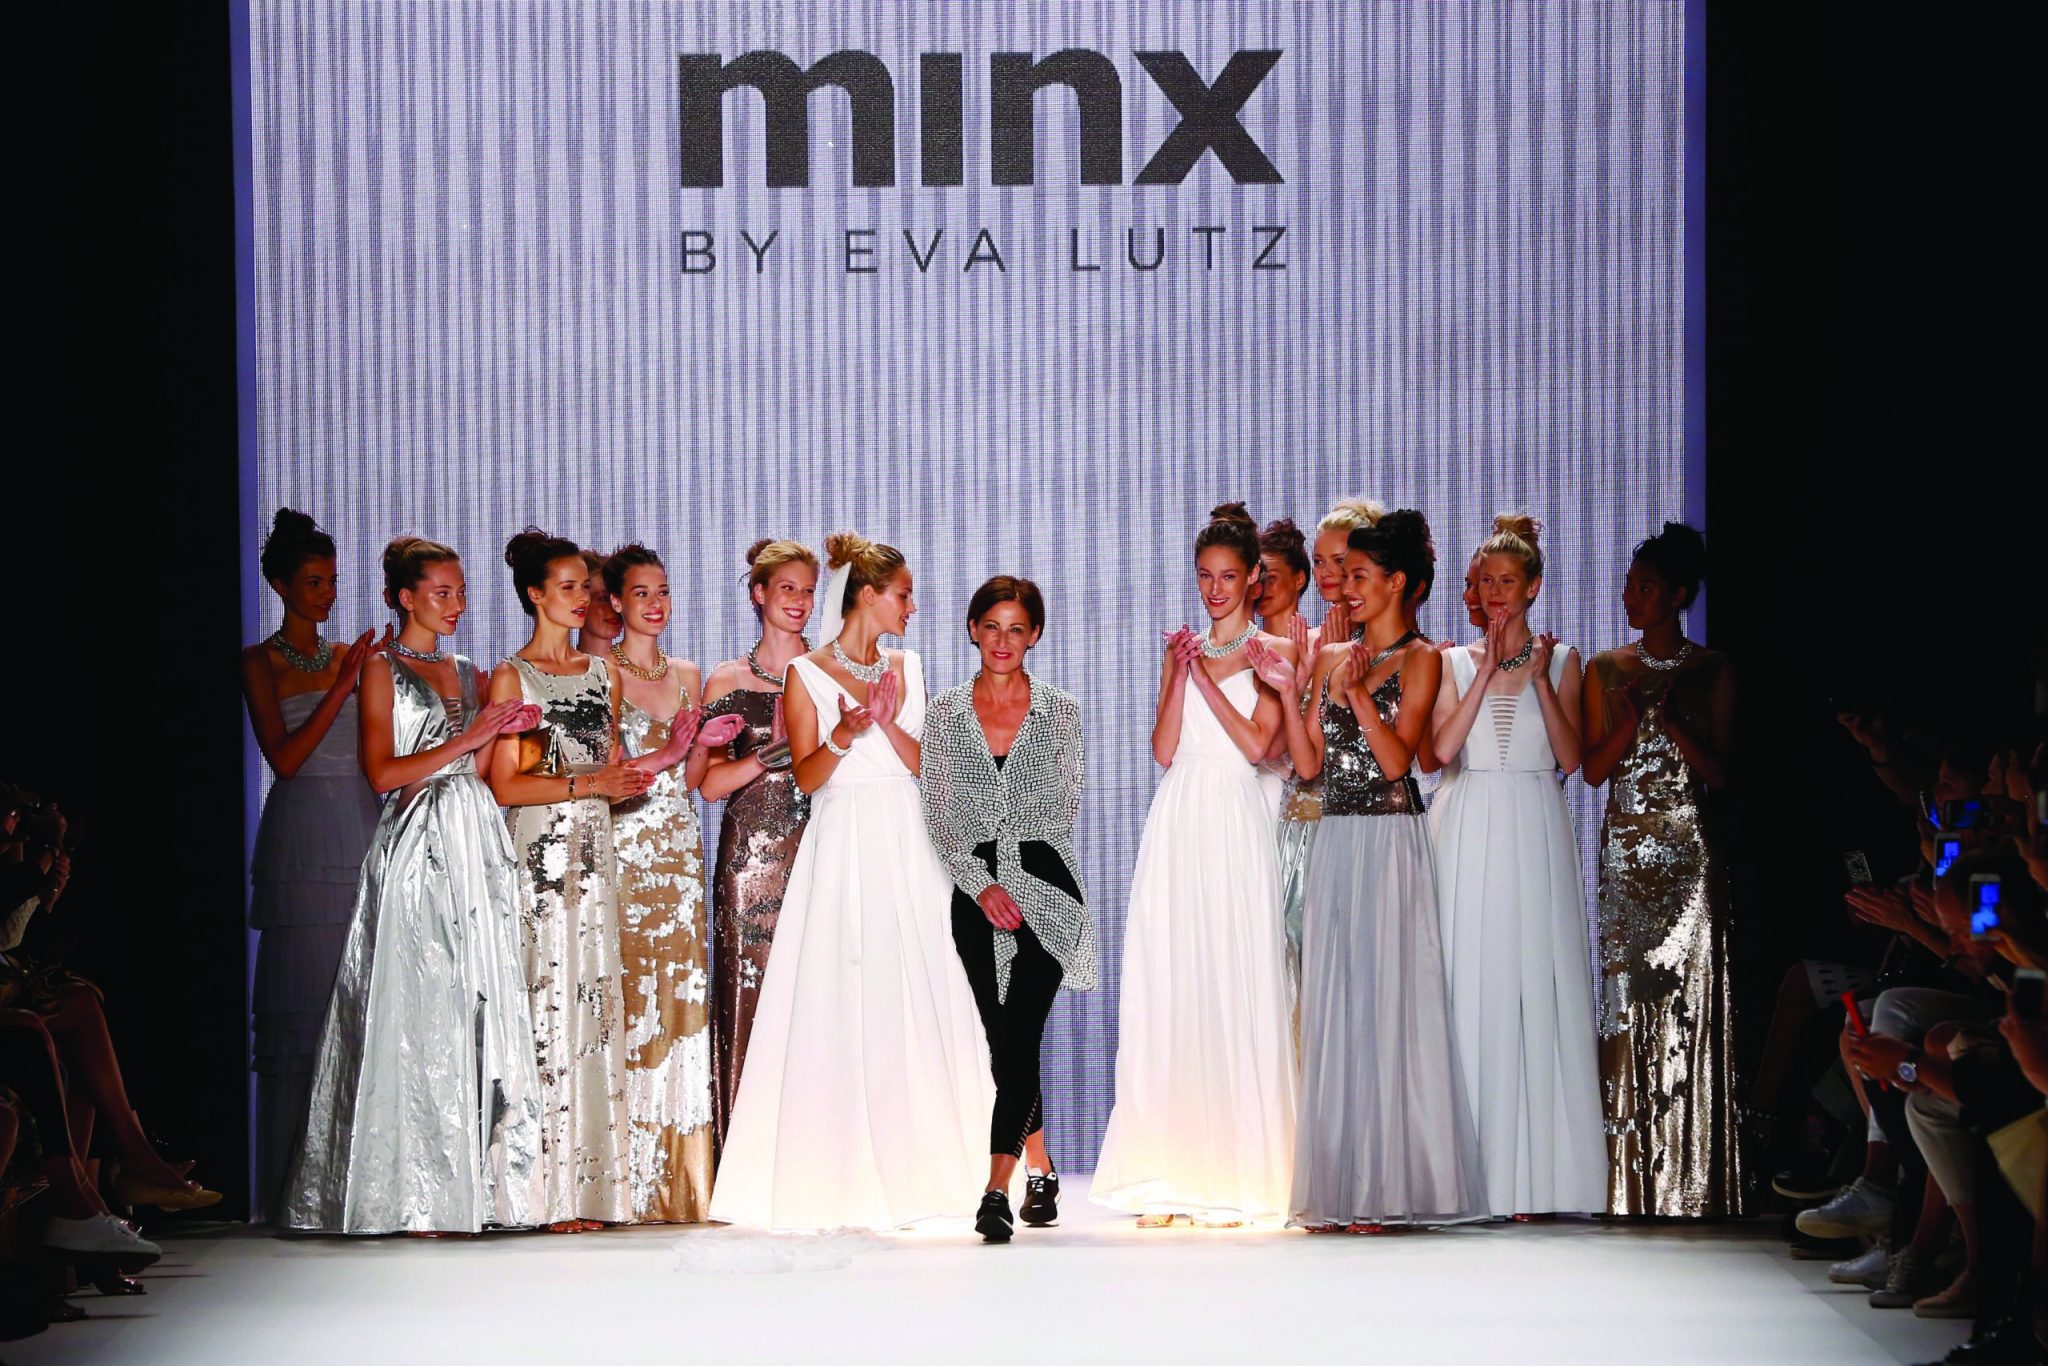 Minx by Eva Lutz Show – Mercedes-Benz Fashion Week Berlin Spring/Summer 2017